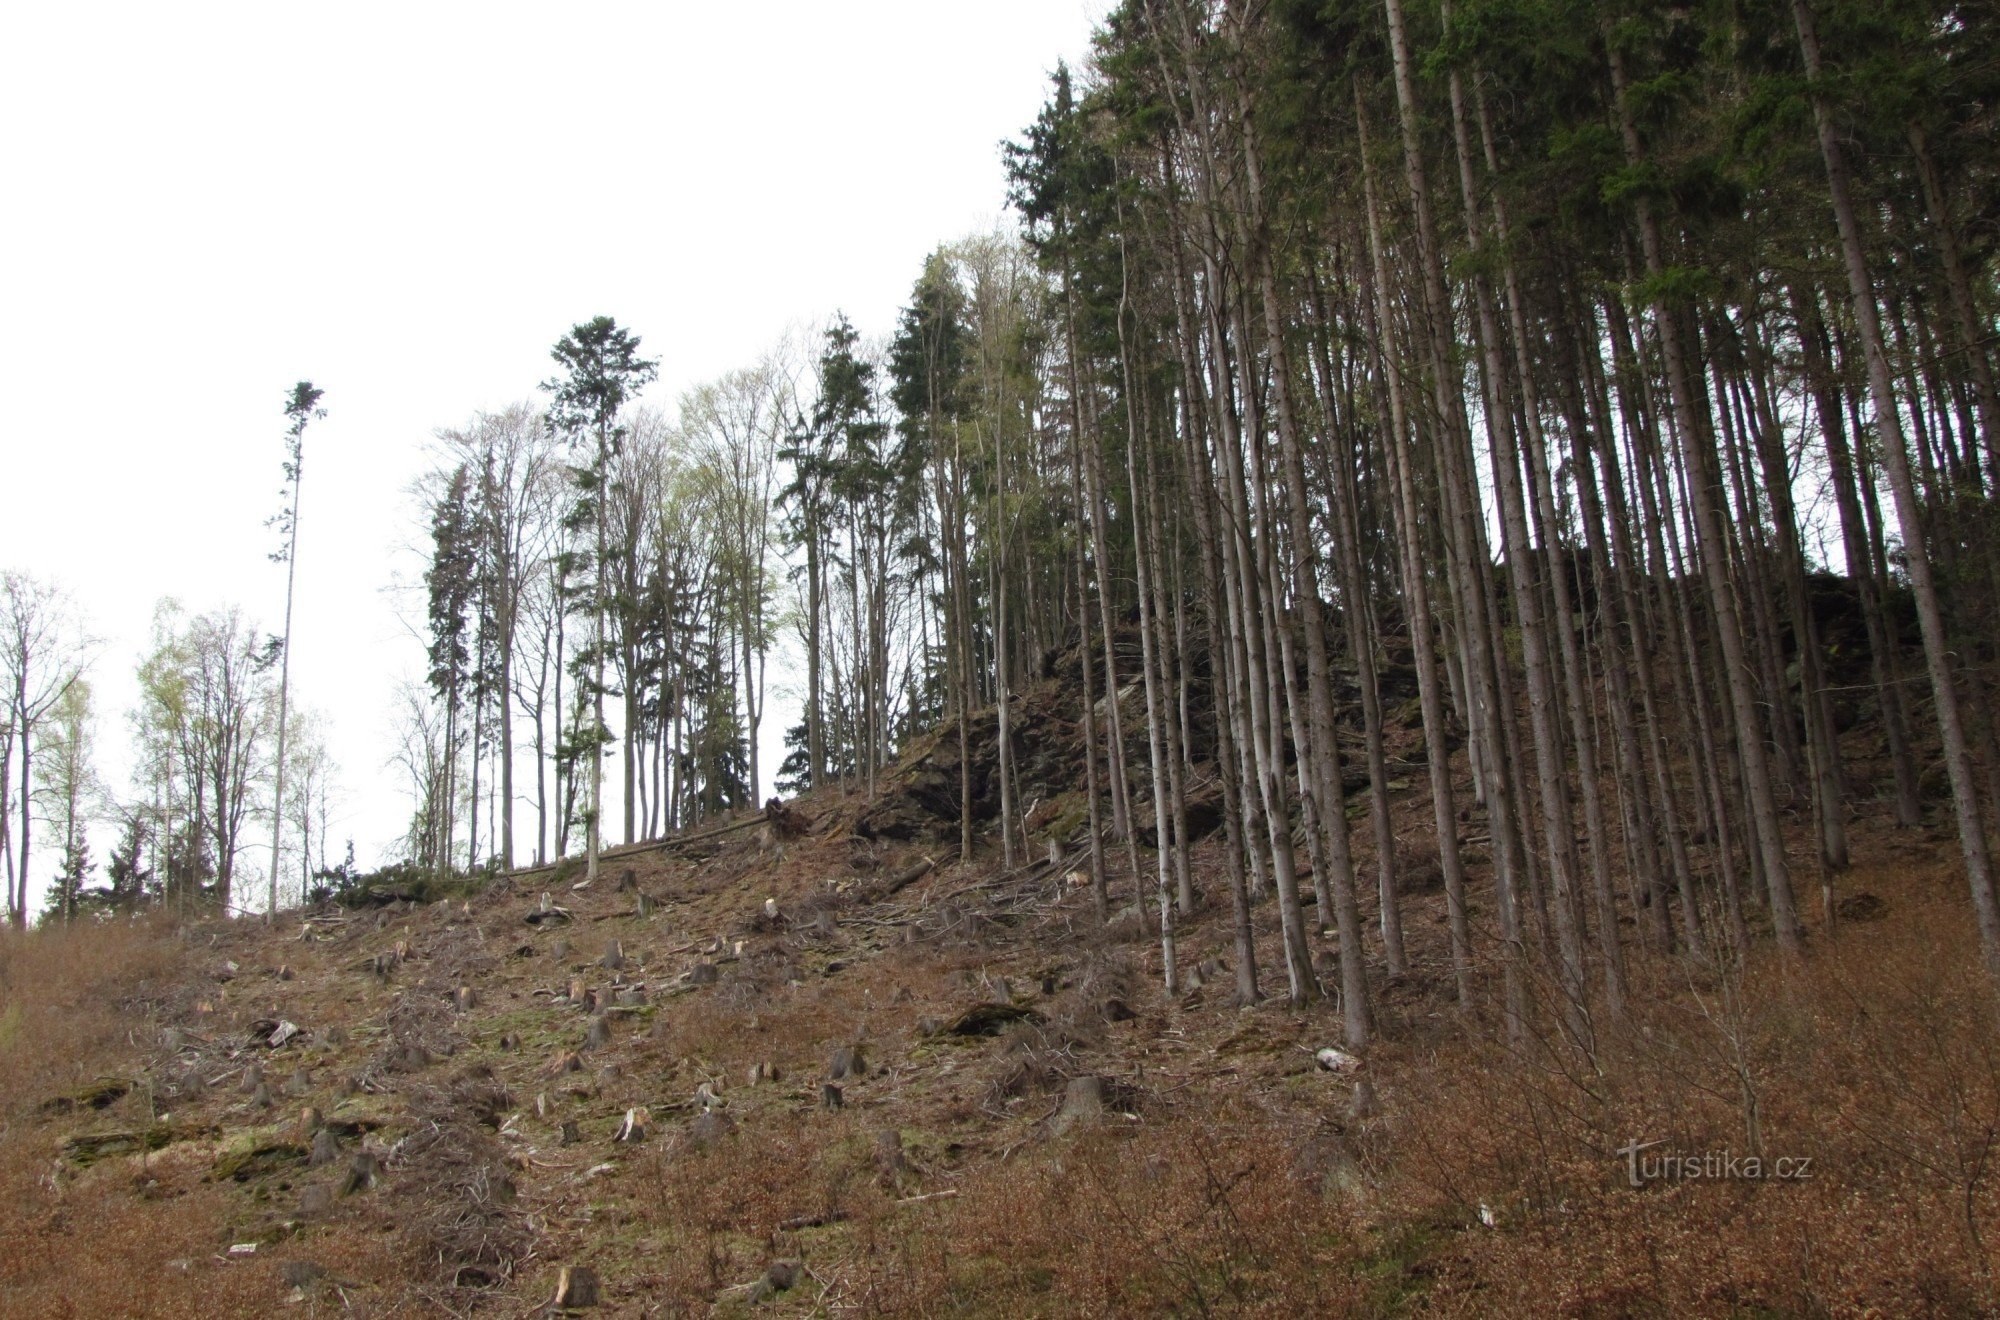 Đi bộ qua thung lũng Hučava